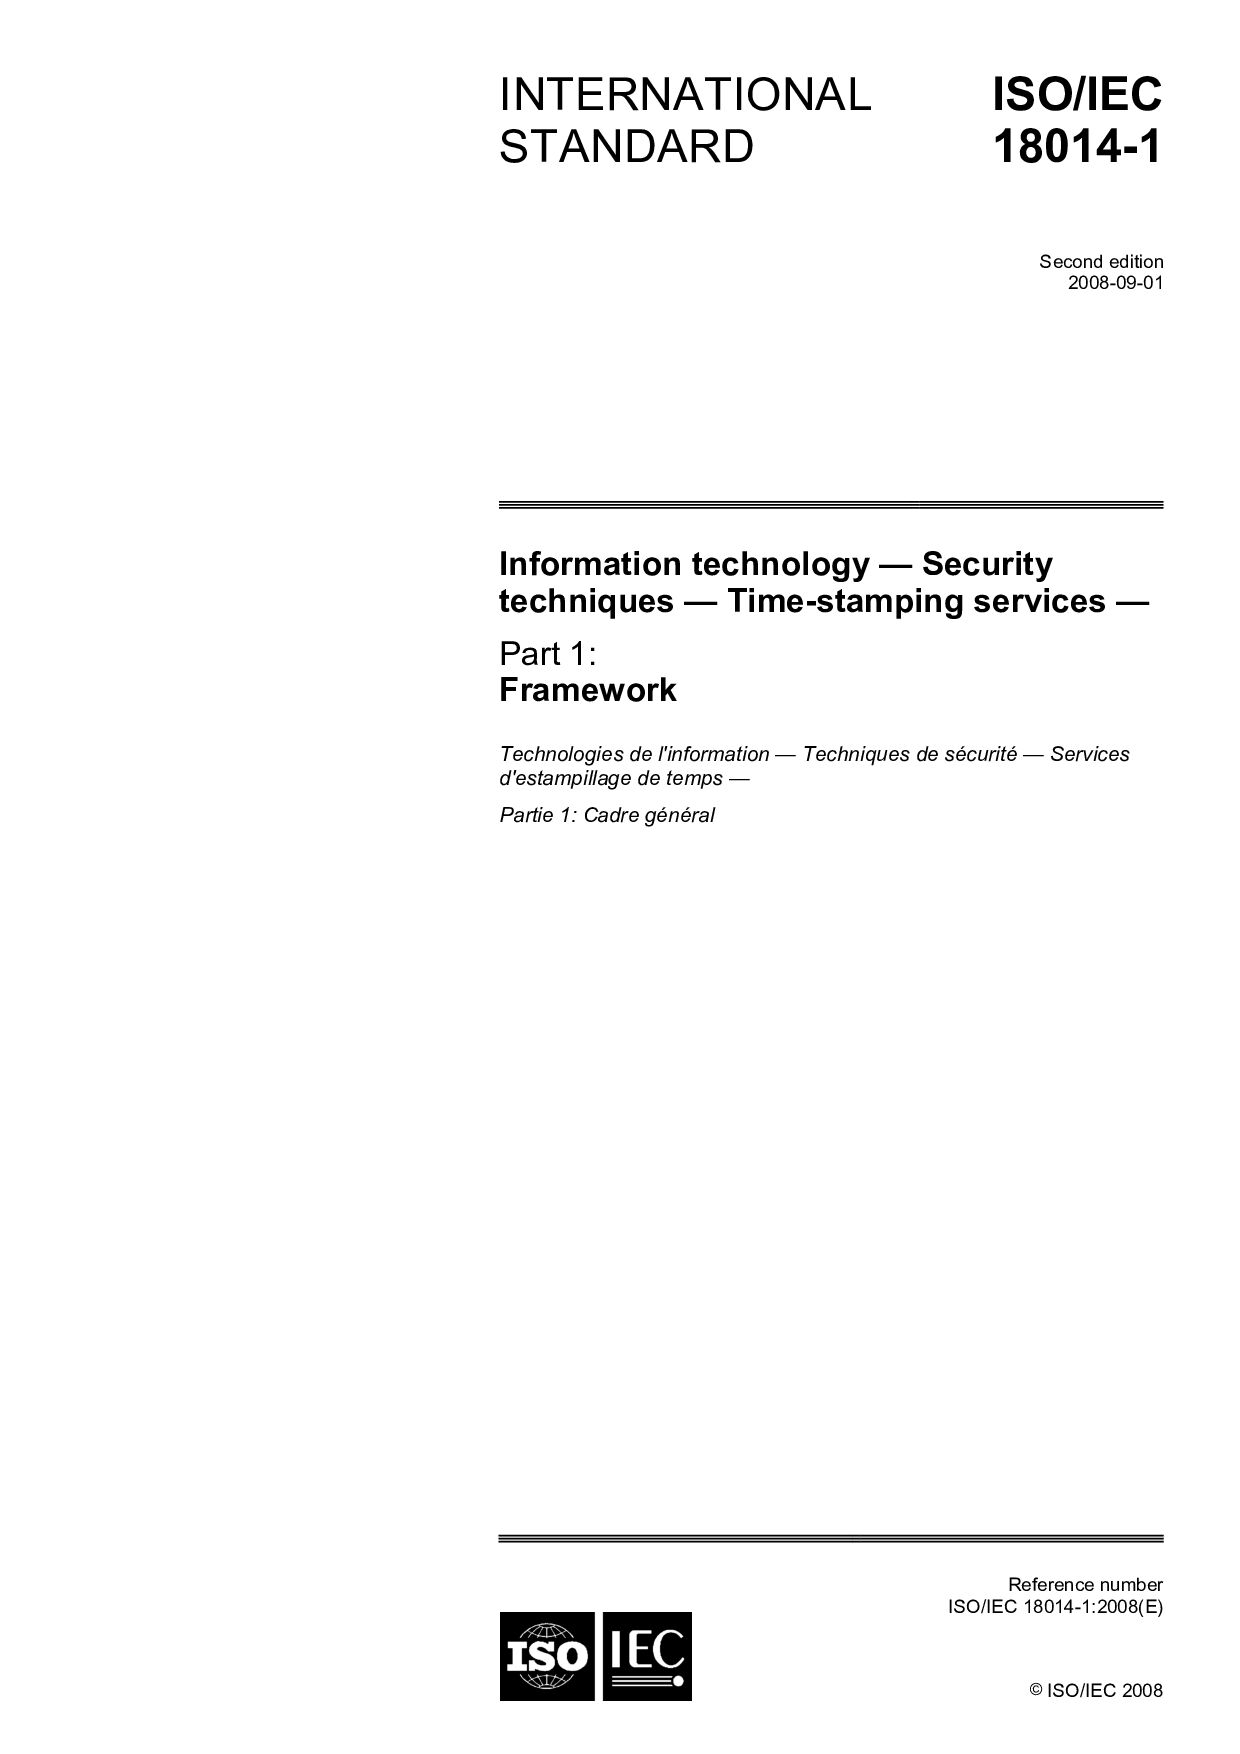 ISO/IEC 18014-1:2008封面图